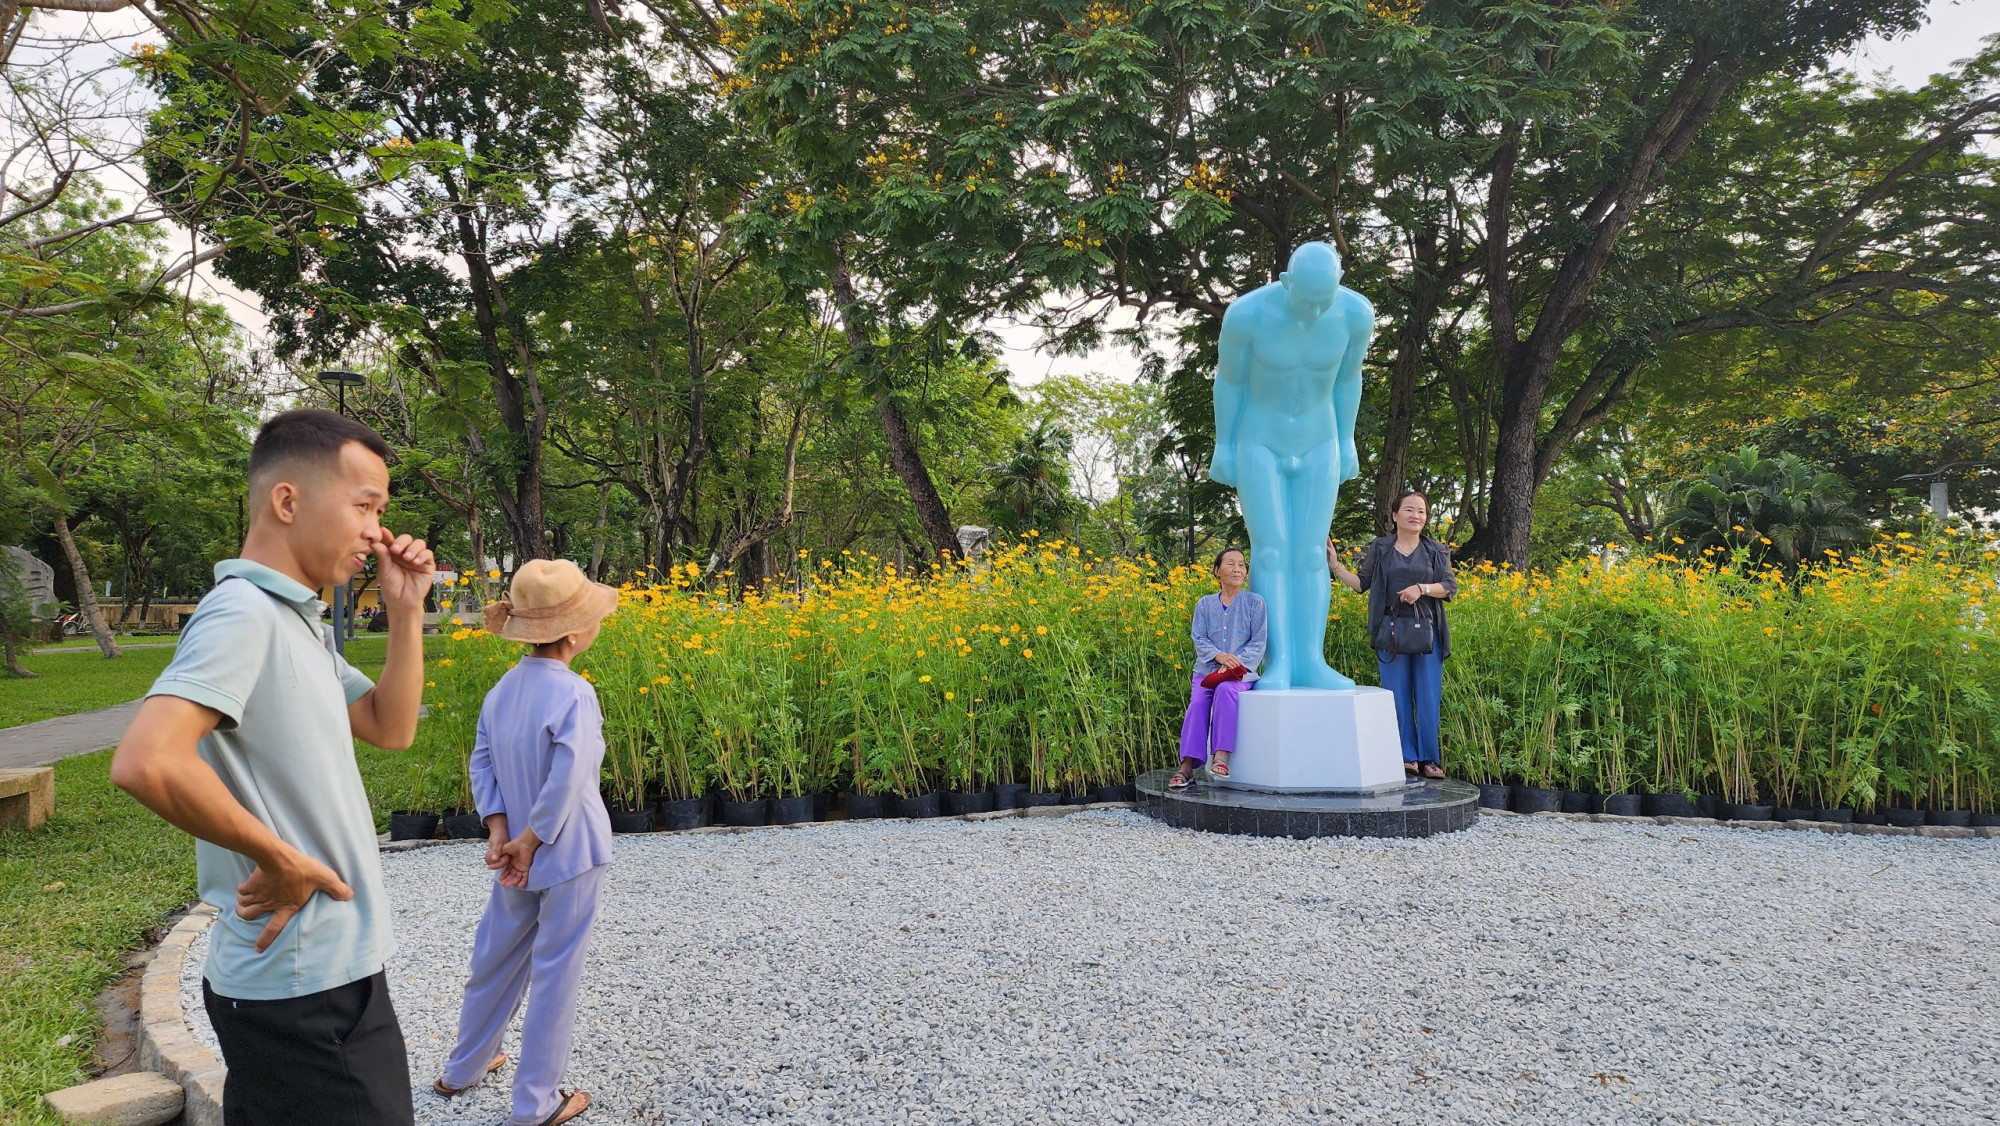 Bức tượng mang thông điệp 'tôn trọng và thấu hiểu', đồng thời thể hiện phong cách chào hỏi khiêm nhường của người Hàn Quốc